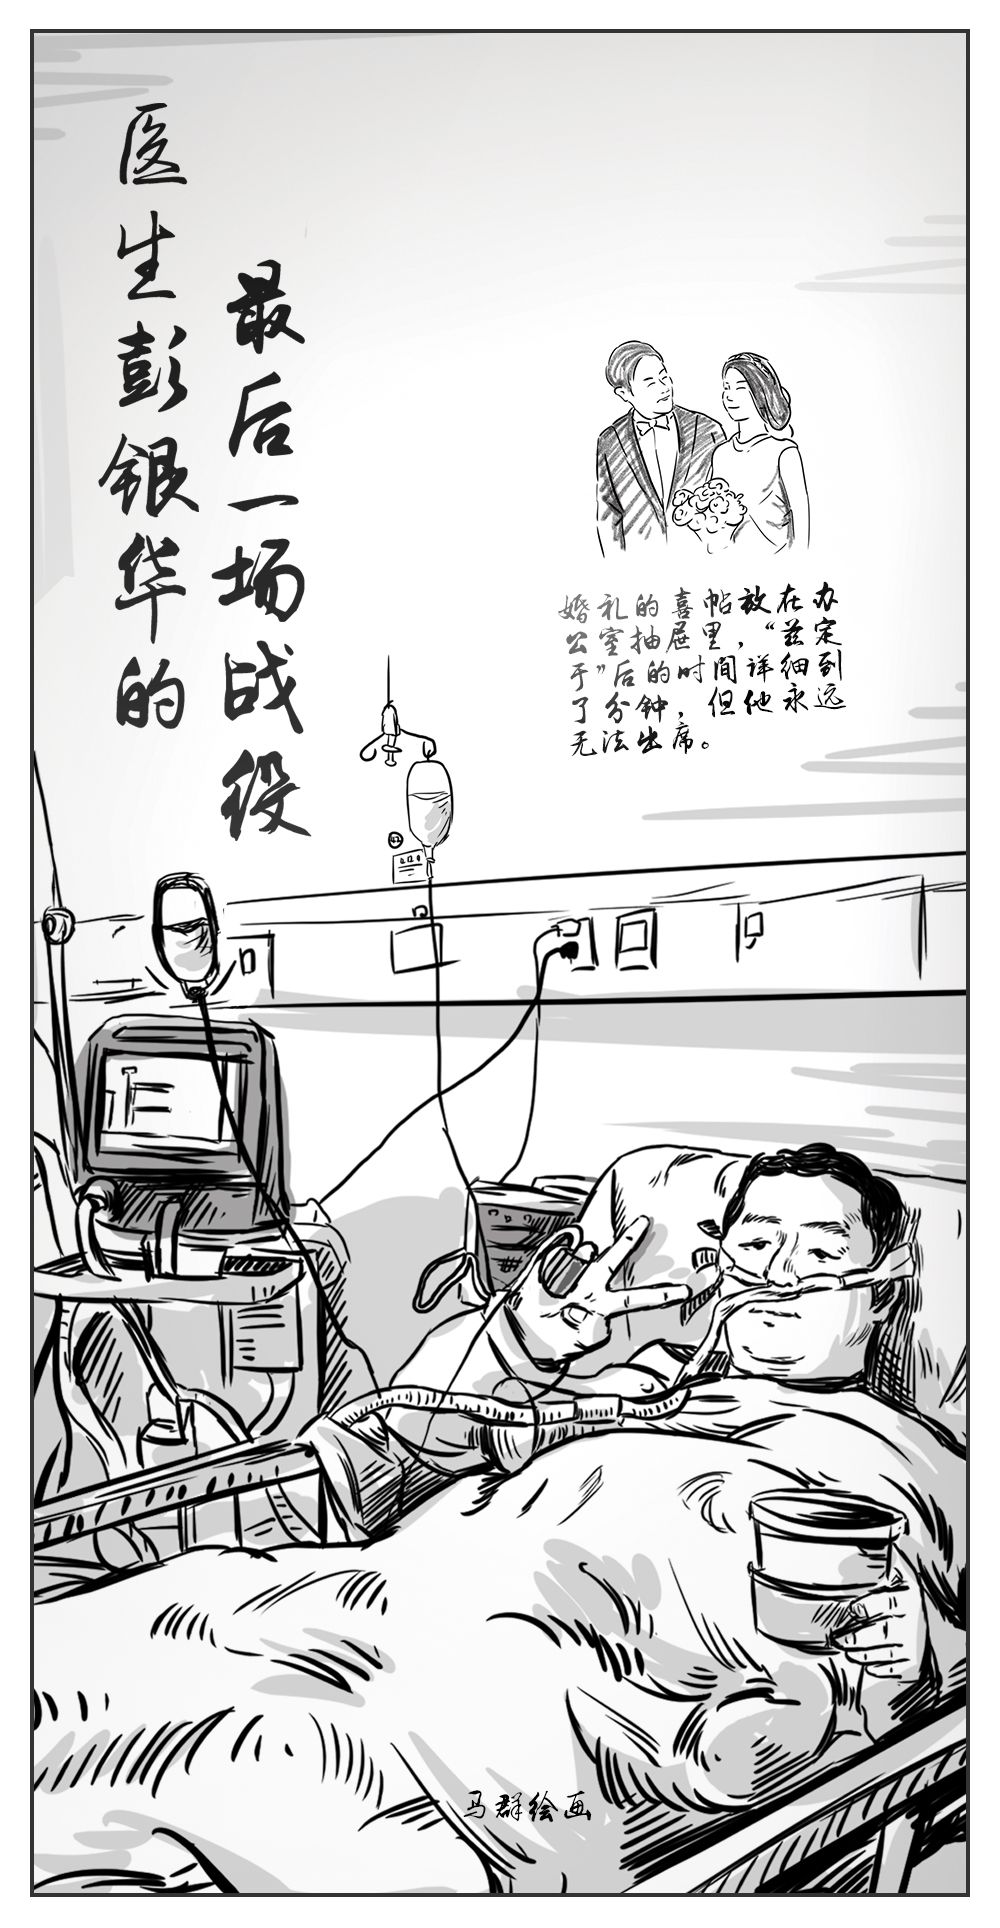 中国青年报参评第31届中国新闻奖新闻漫画作品公示